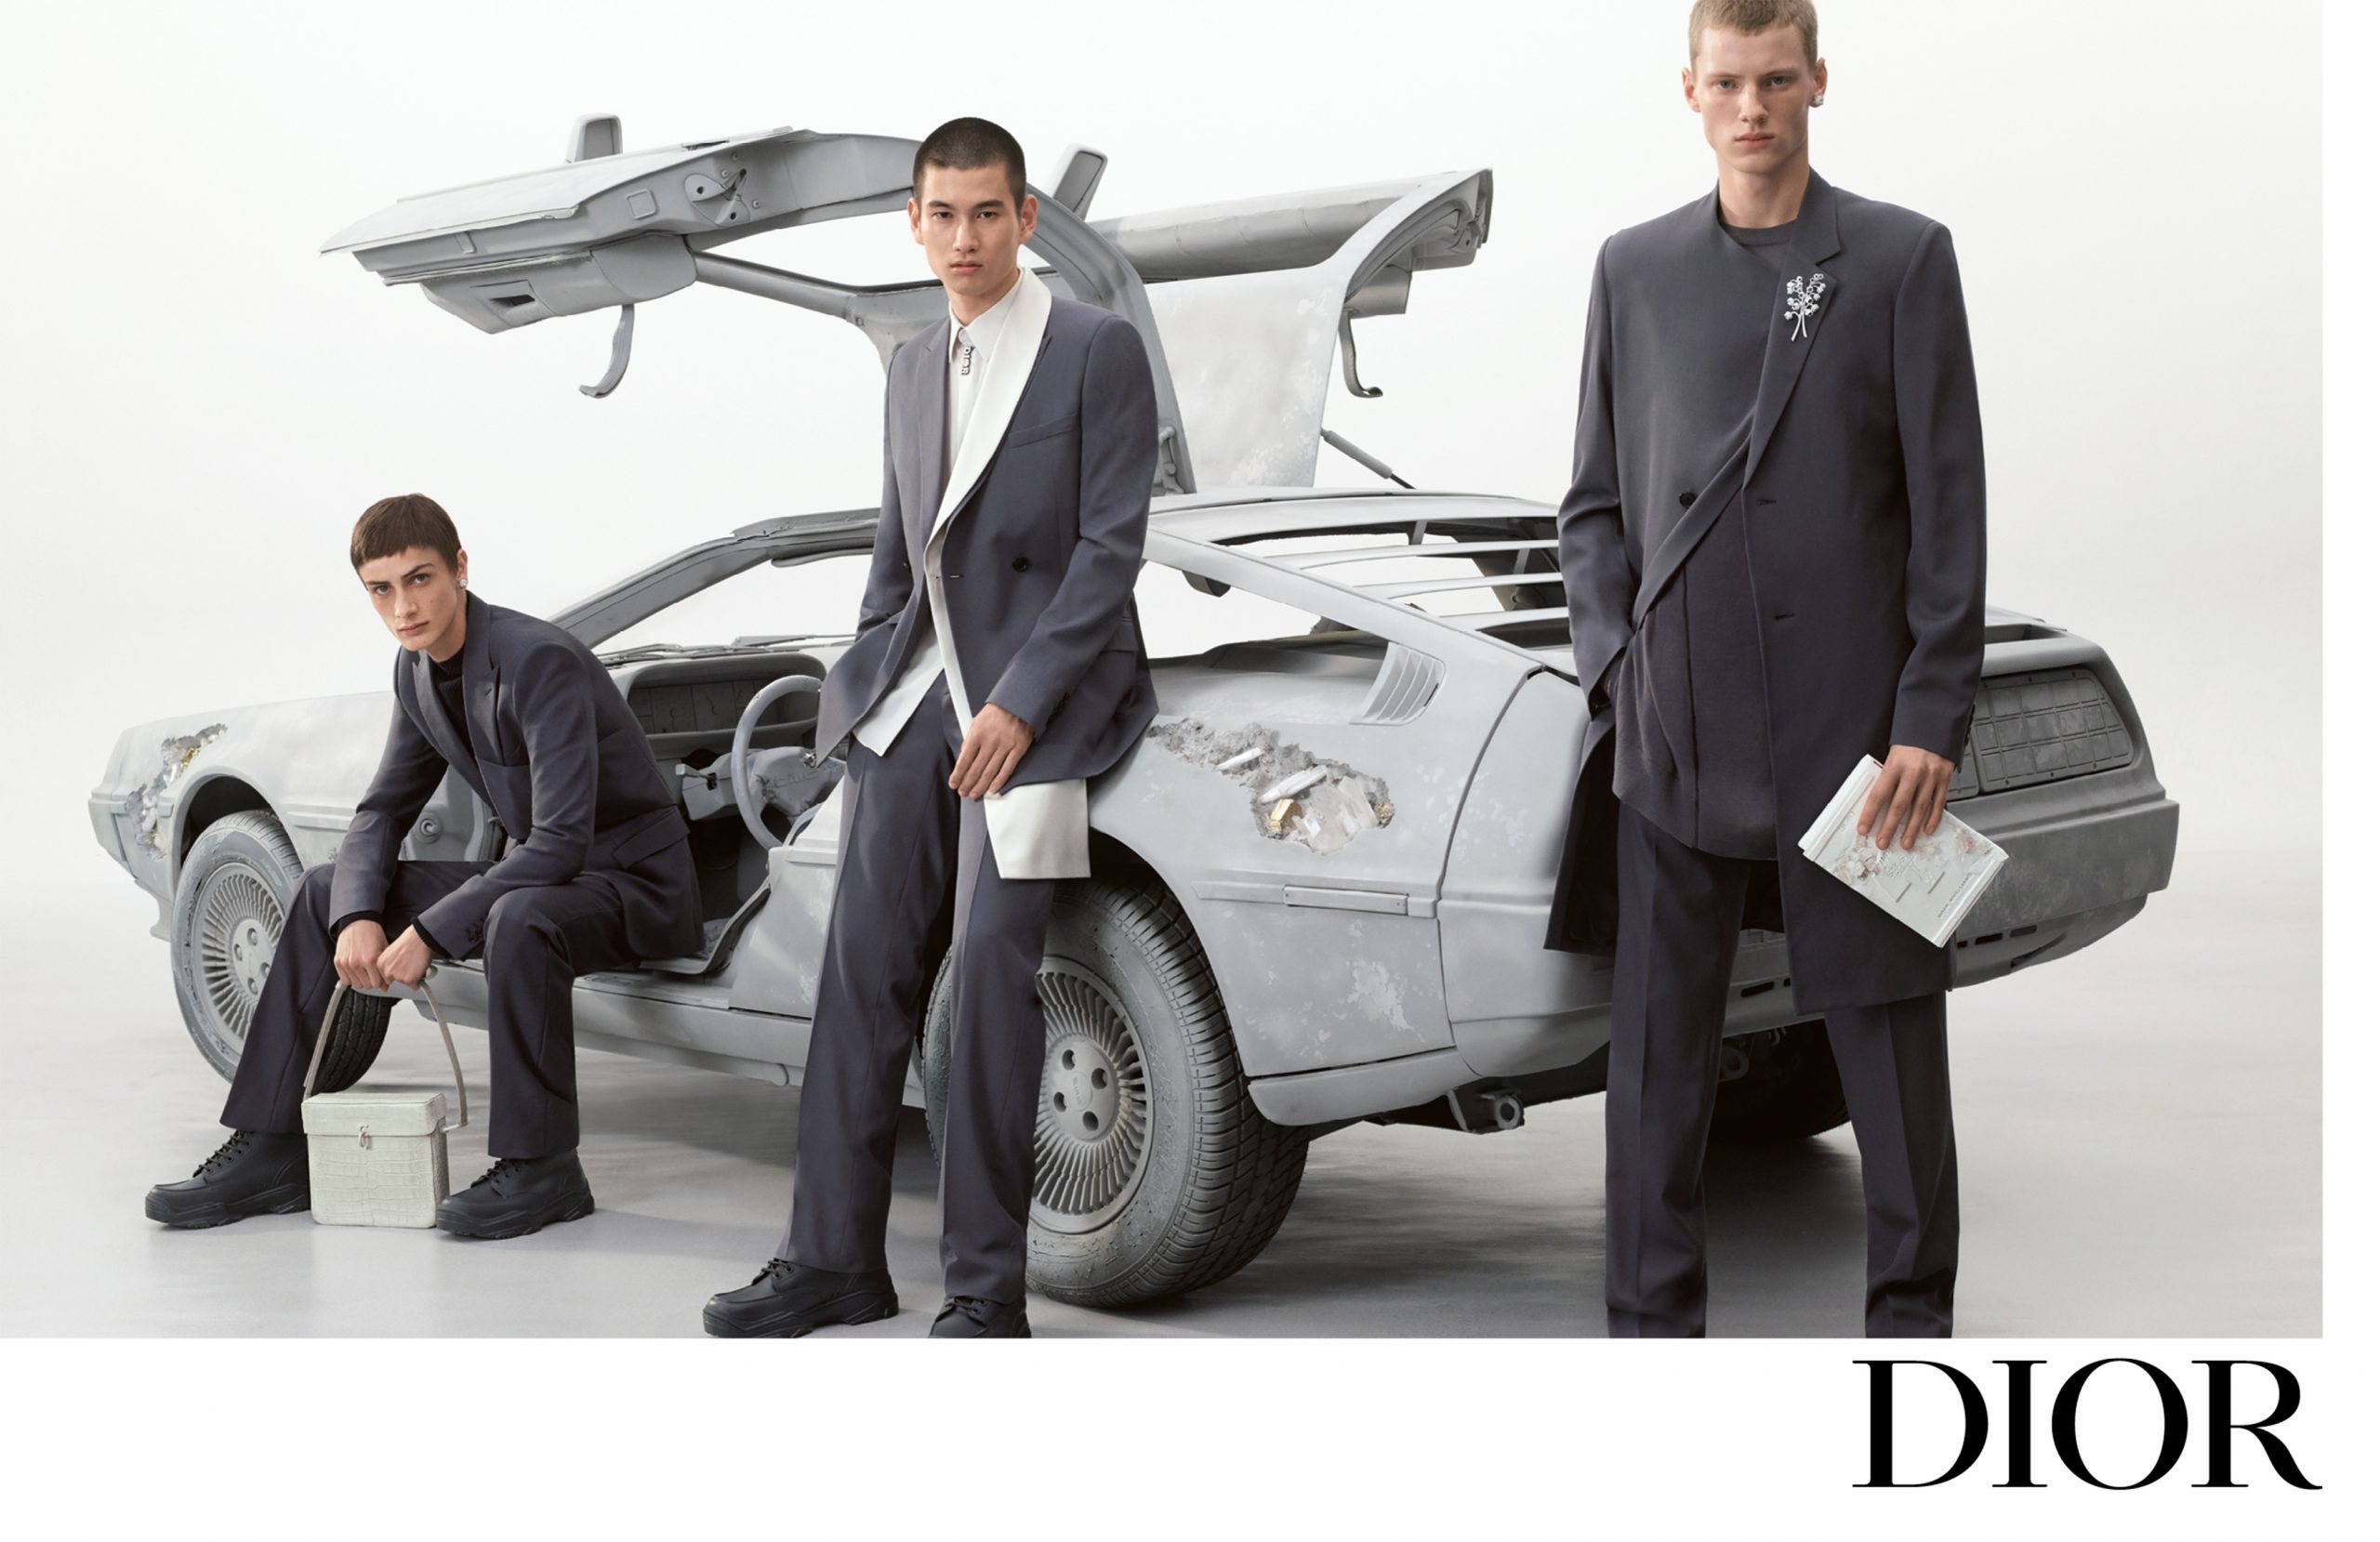 Dior Men - The Impression